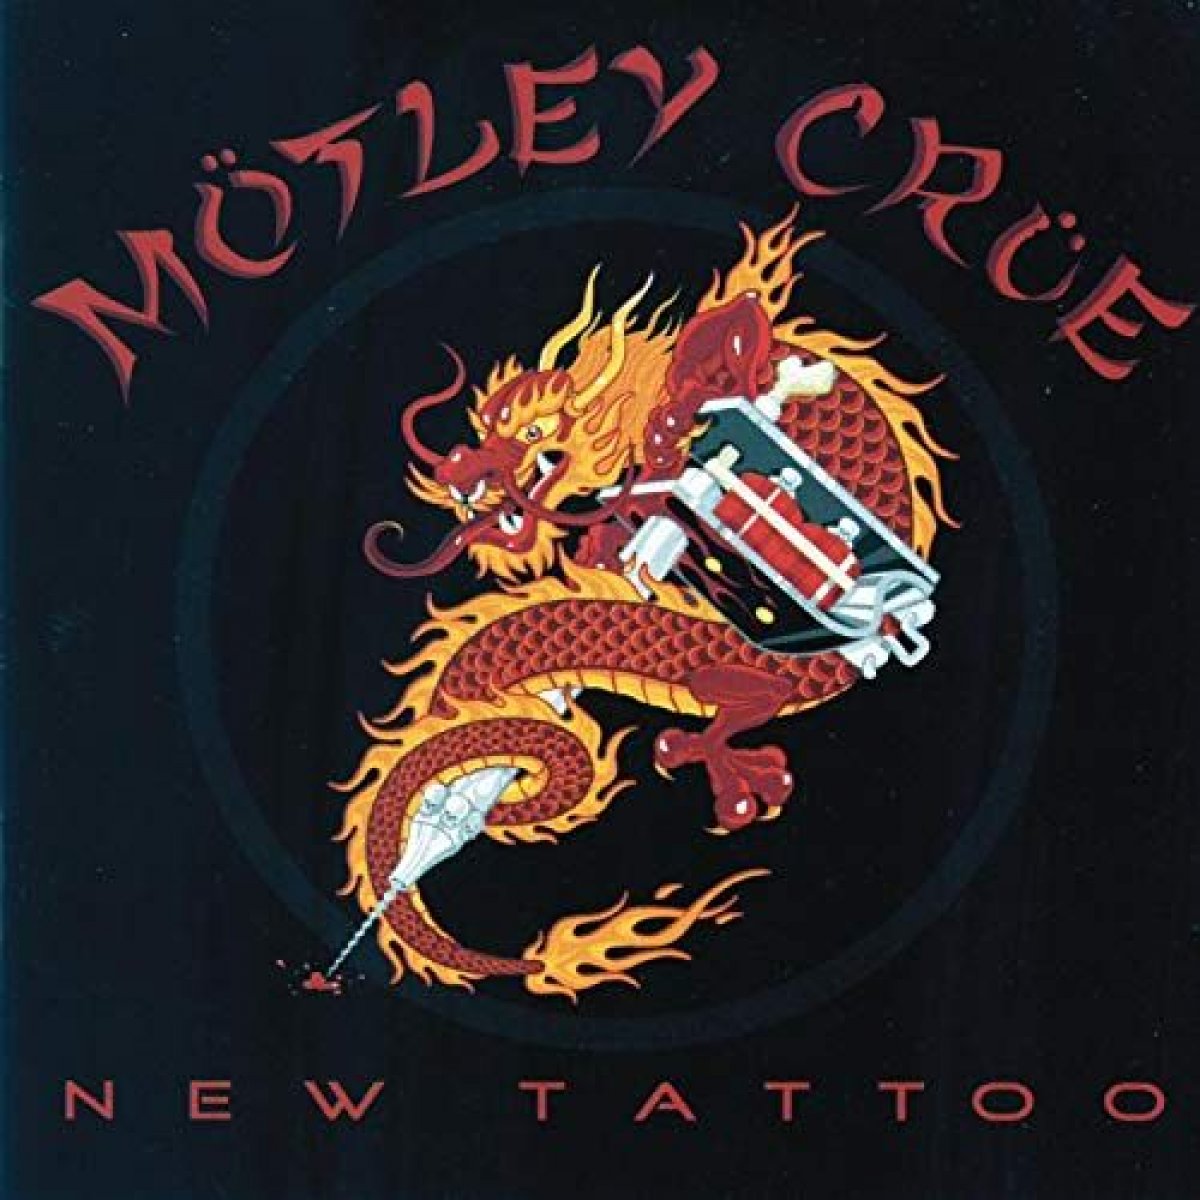 motley-crue-the-dirt-netflix-new-tattoo-album